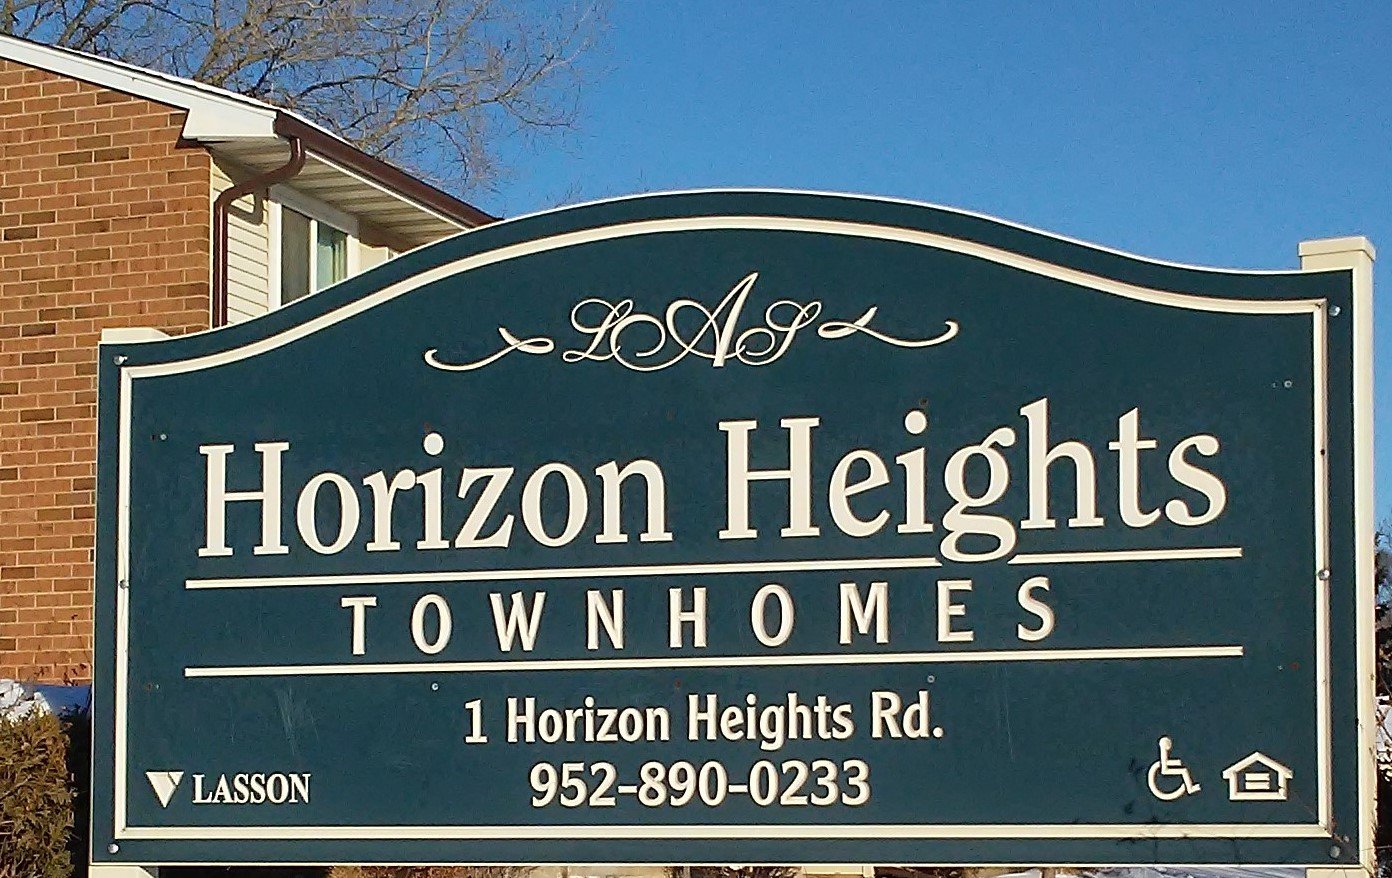 HORIZON HEIGHTS